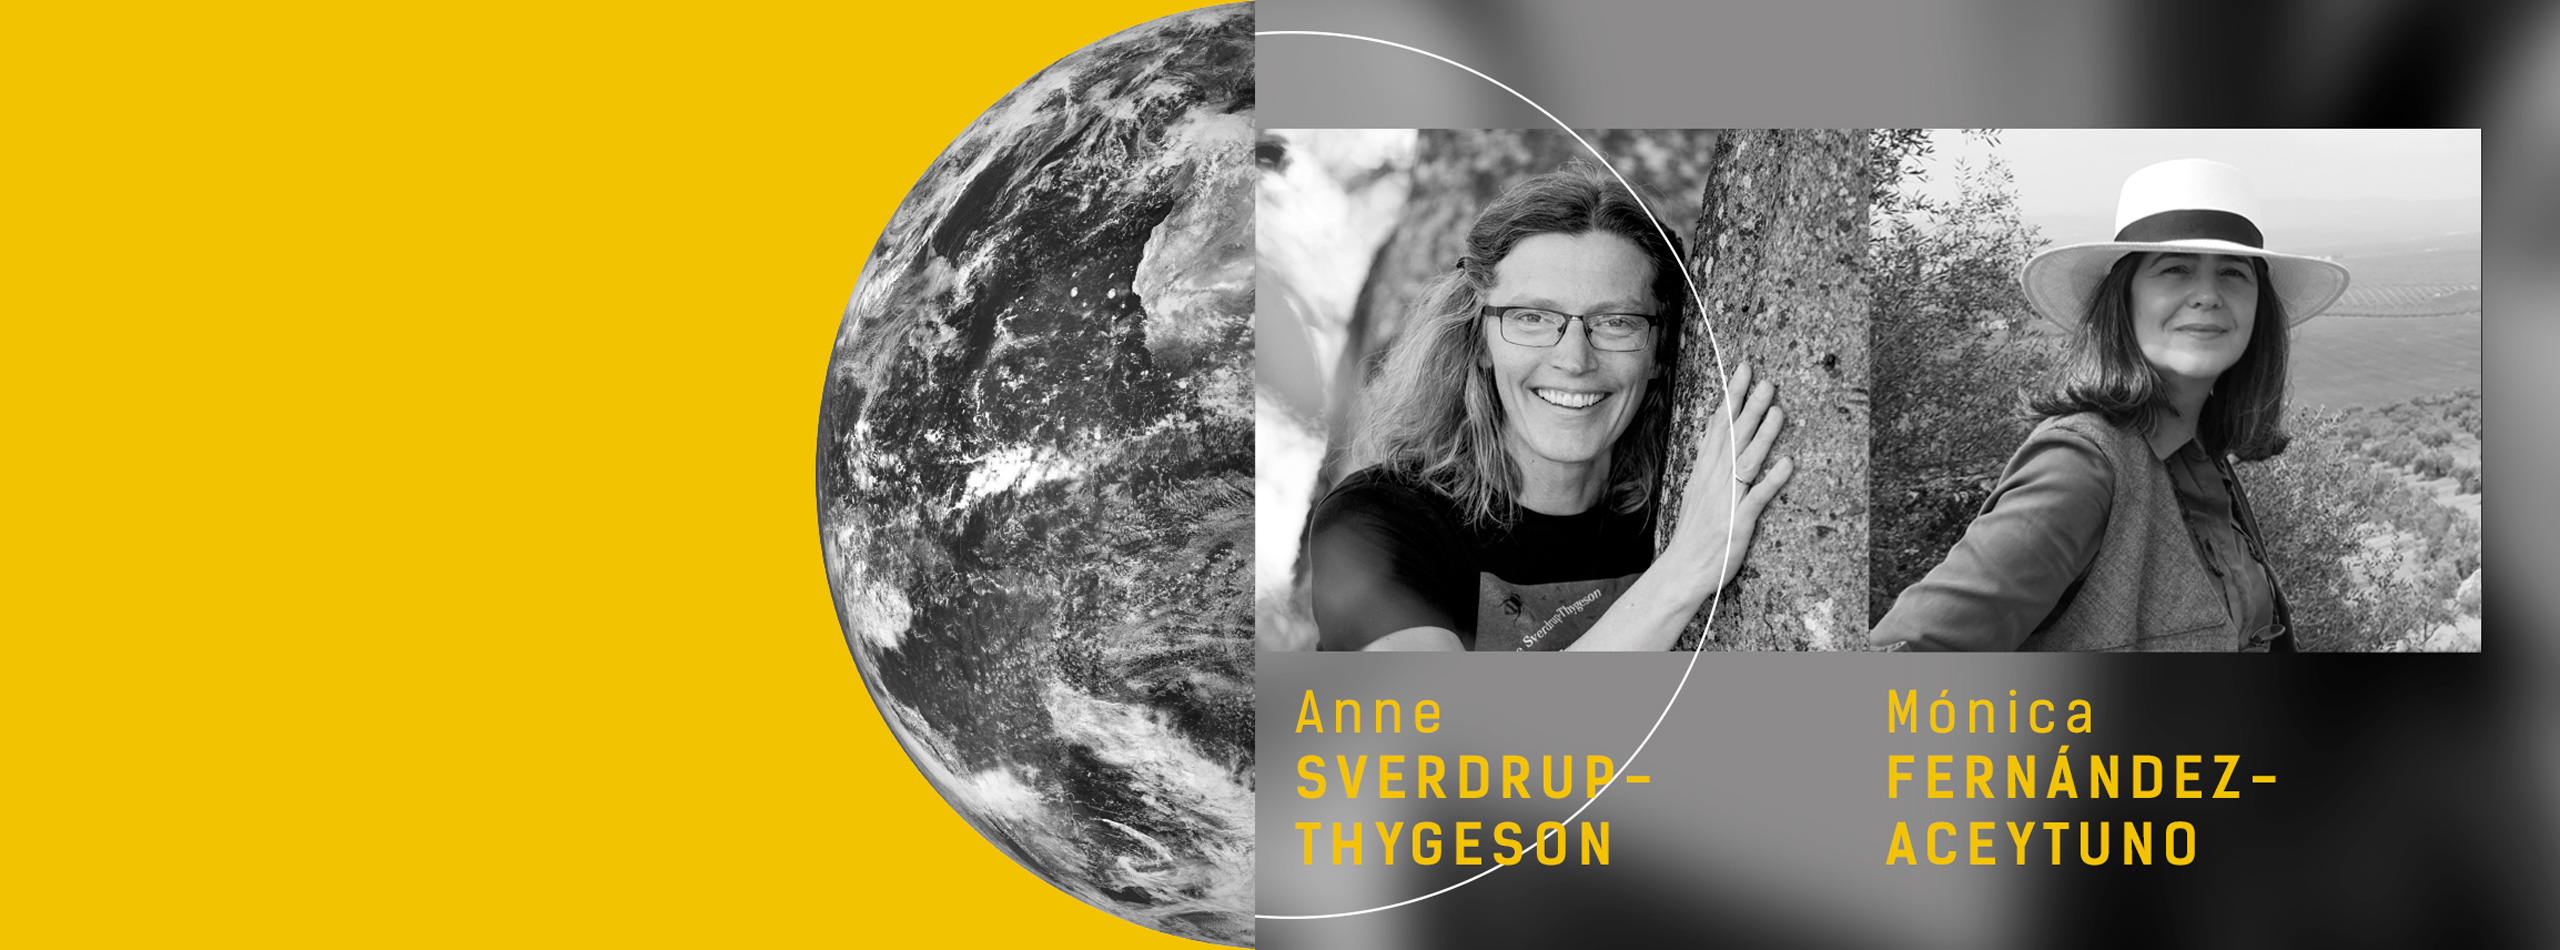 #ForoTelos2020. La importancia de mantener los ecosistemas, con Anne Sverdrup-Thygeson